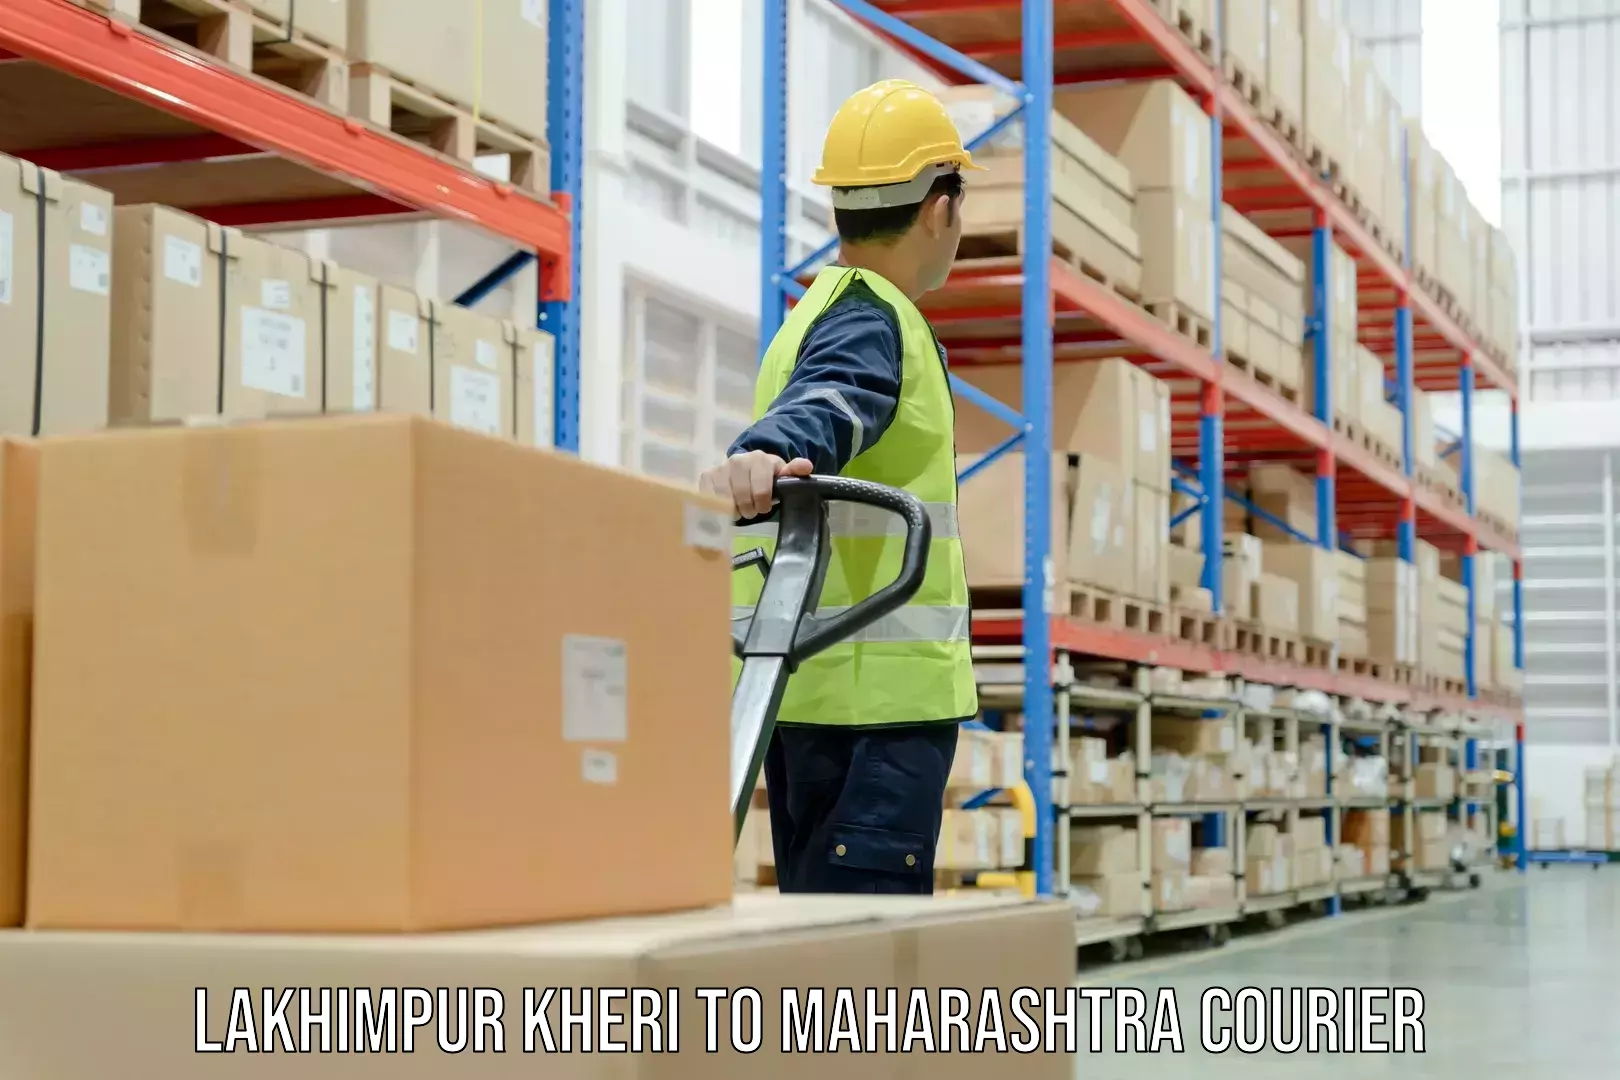 Courier service comparison Lakhimpur Kheri to Khed